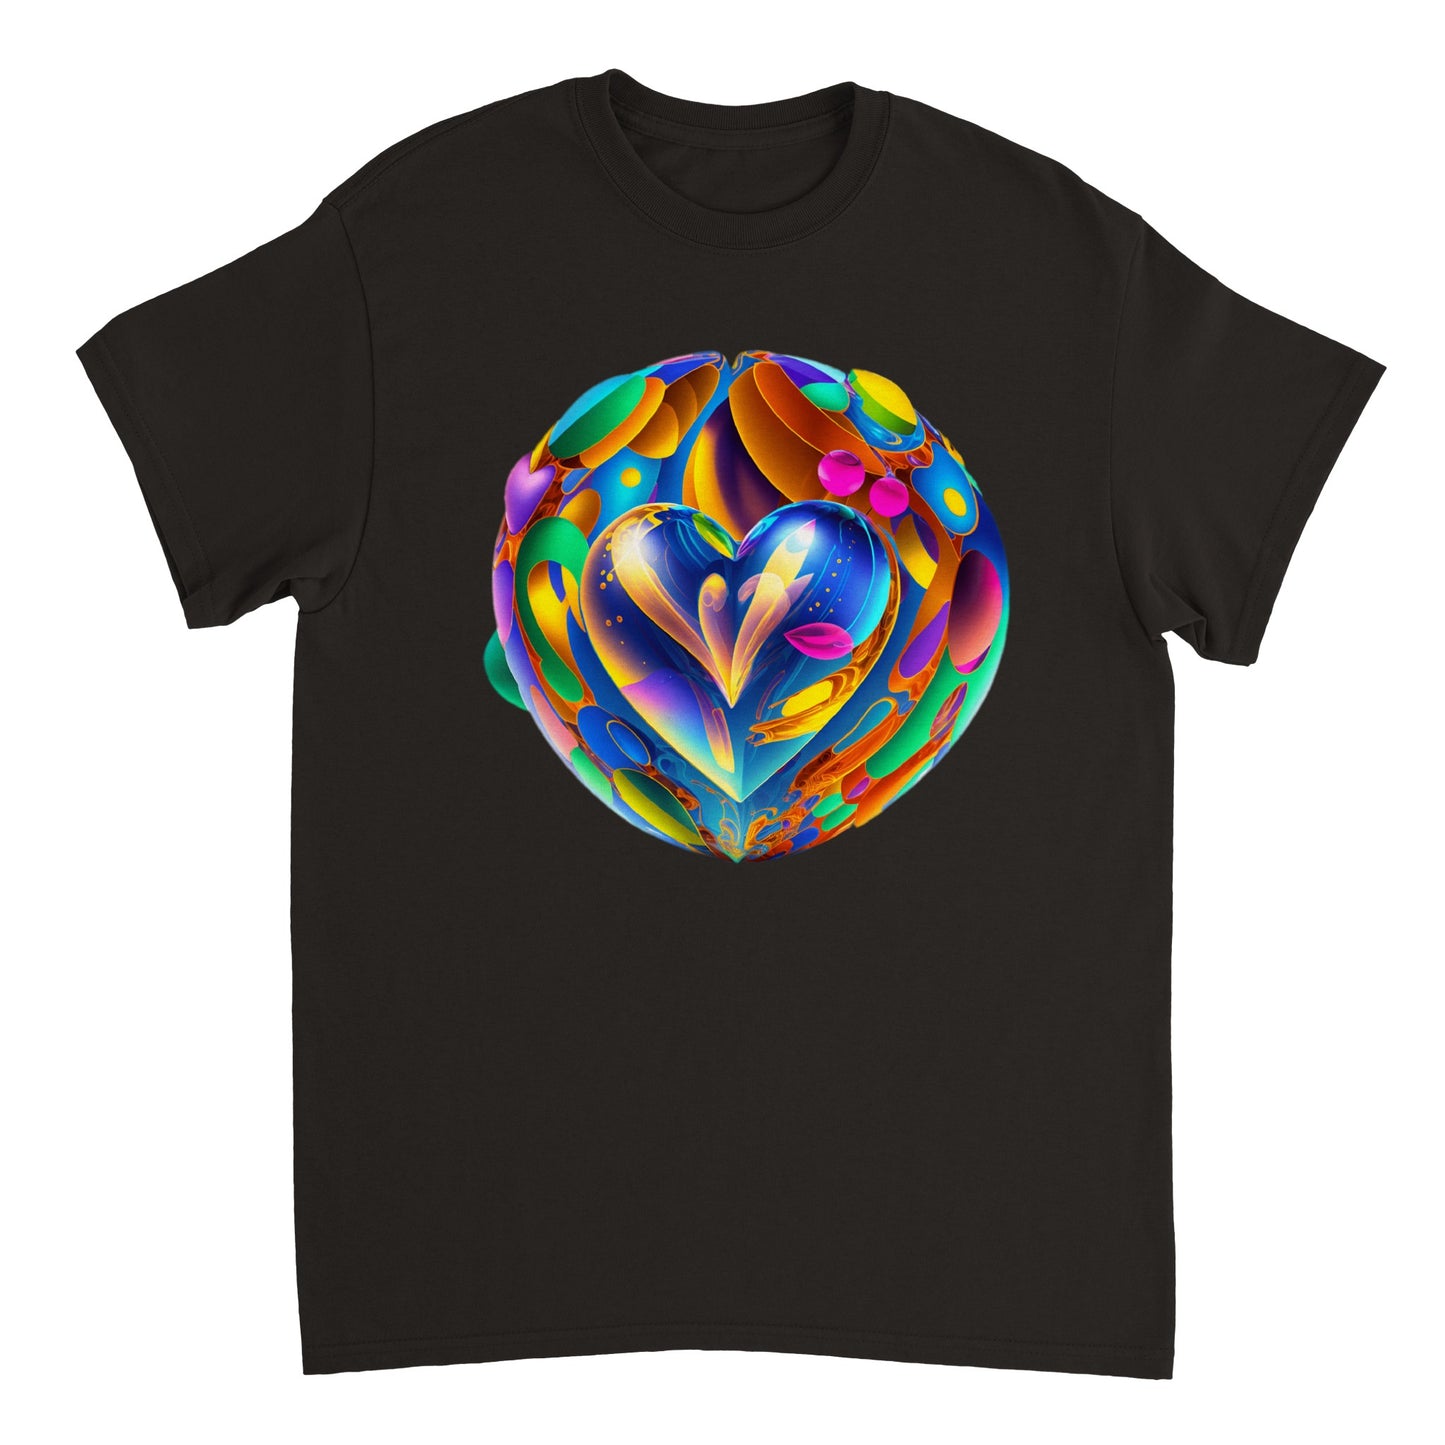 Love Heart - Heavyweight Unisex Crewneck T-shirt 48